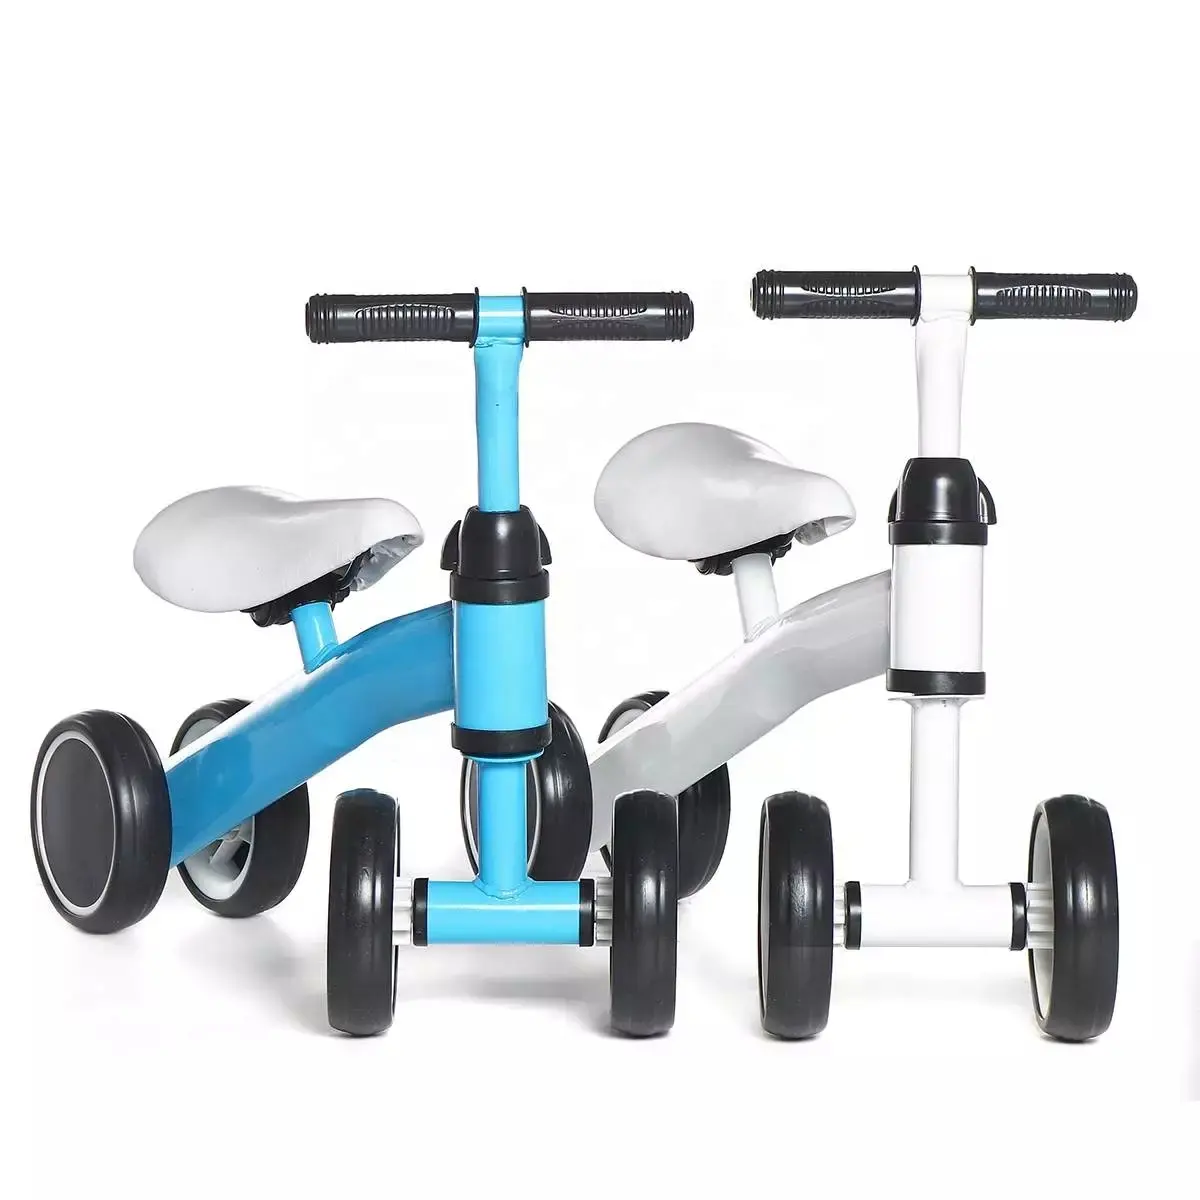 TY баланс велосипед баланса смысл без педаль для верховой езды Игрушки для малышей/детей младшего возраста/От 1 до 3 лет детский велосипед